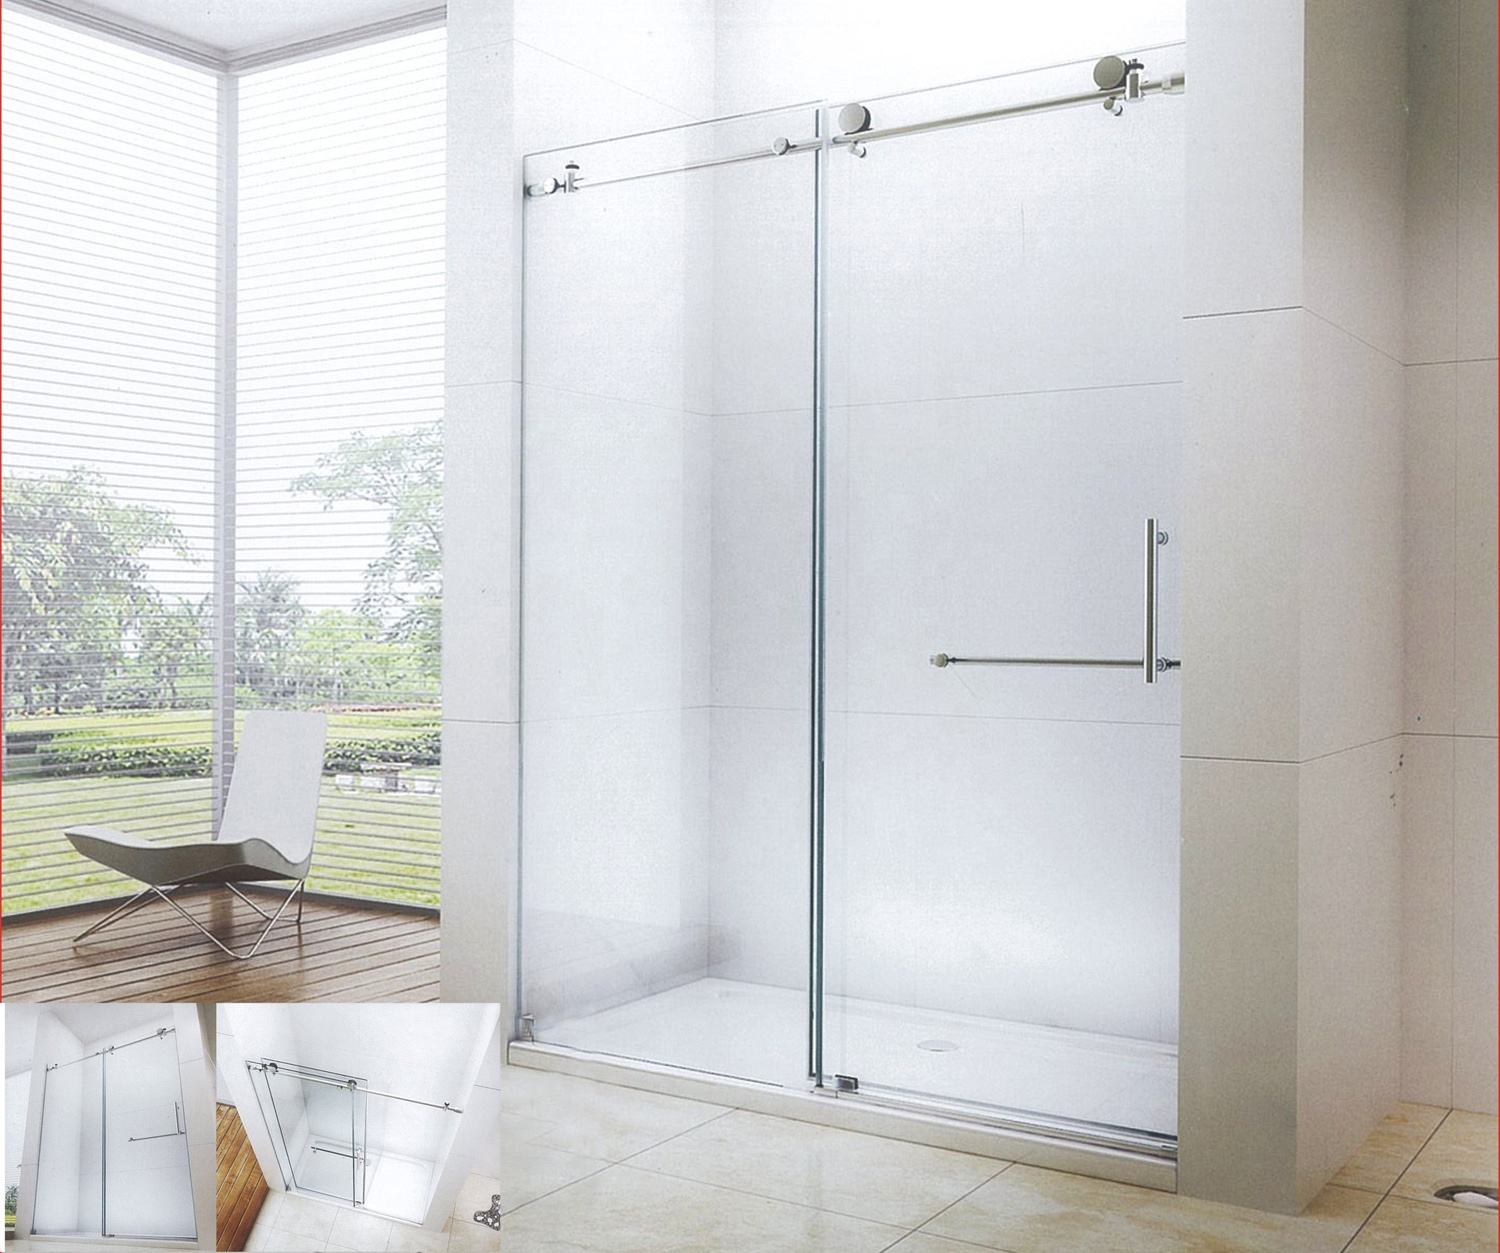 The Importance of Shower Door Handles